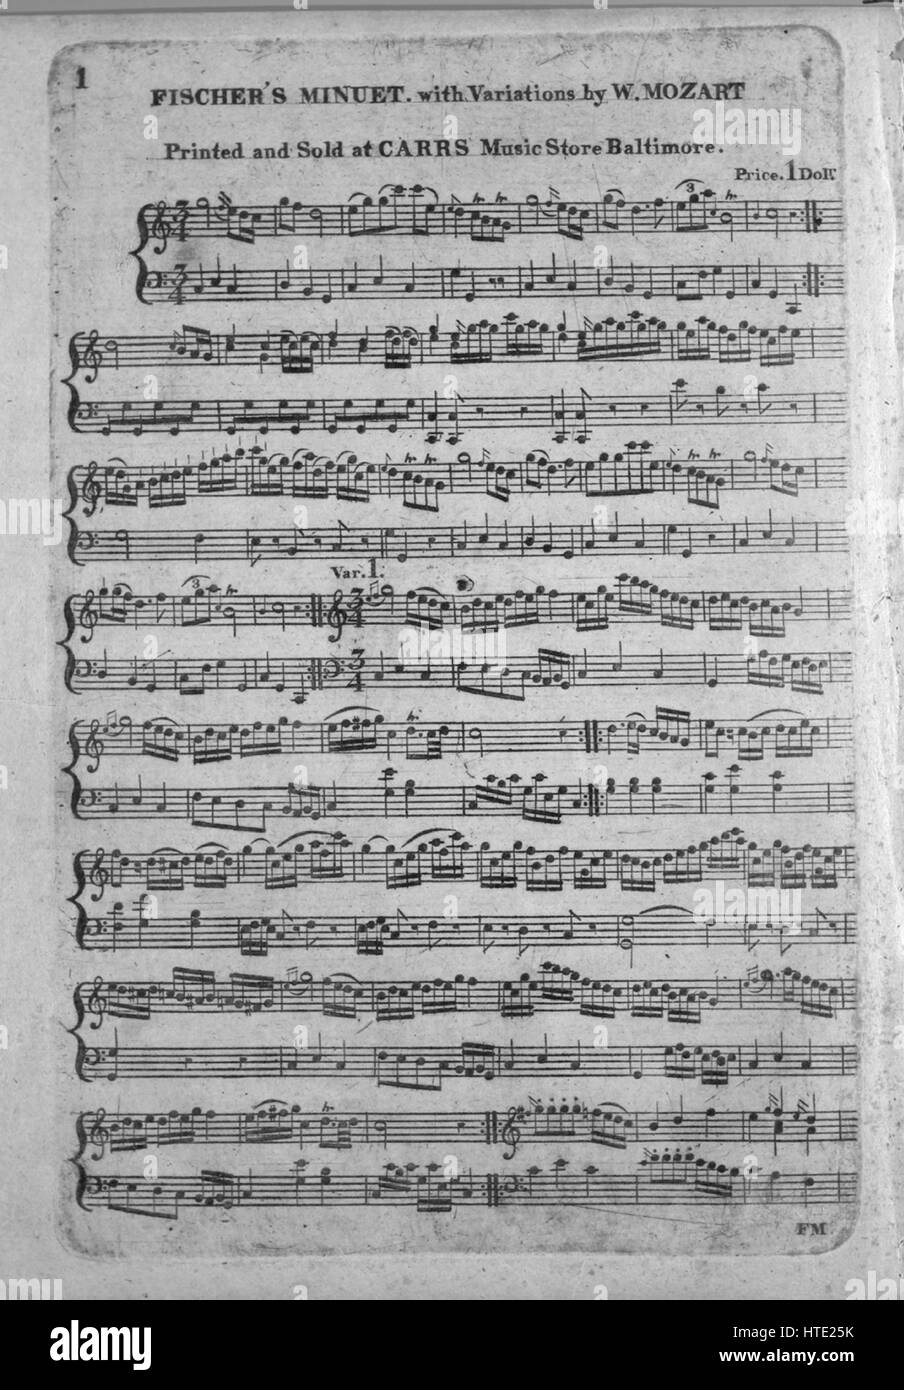 Imagen de cubierta de partituras de la canción "minué de Fischer con  variaciones por W Mozart', con notas de autoría original leyendo 'na',  Estados Unidos, 1900. El editor está clasificada como 'Carrs